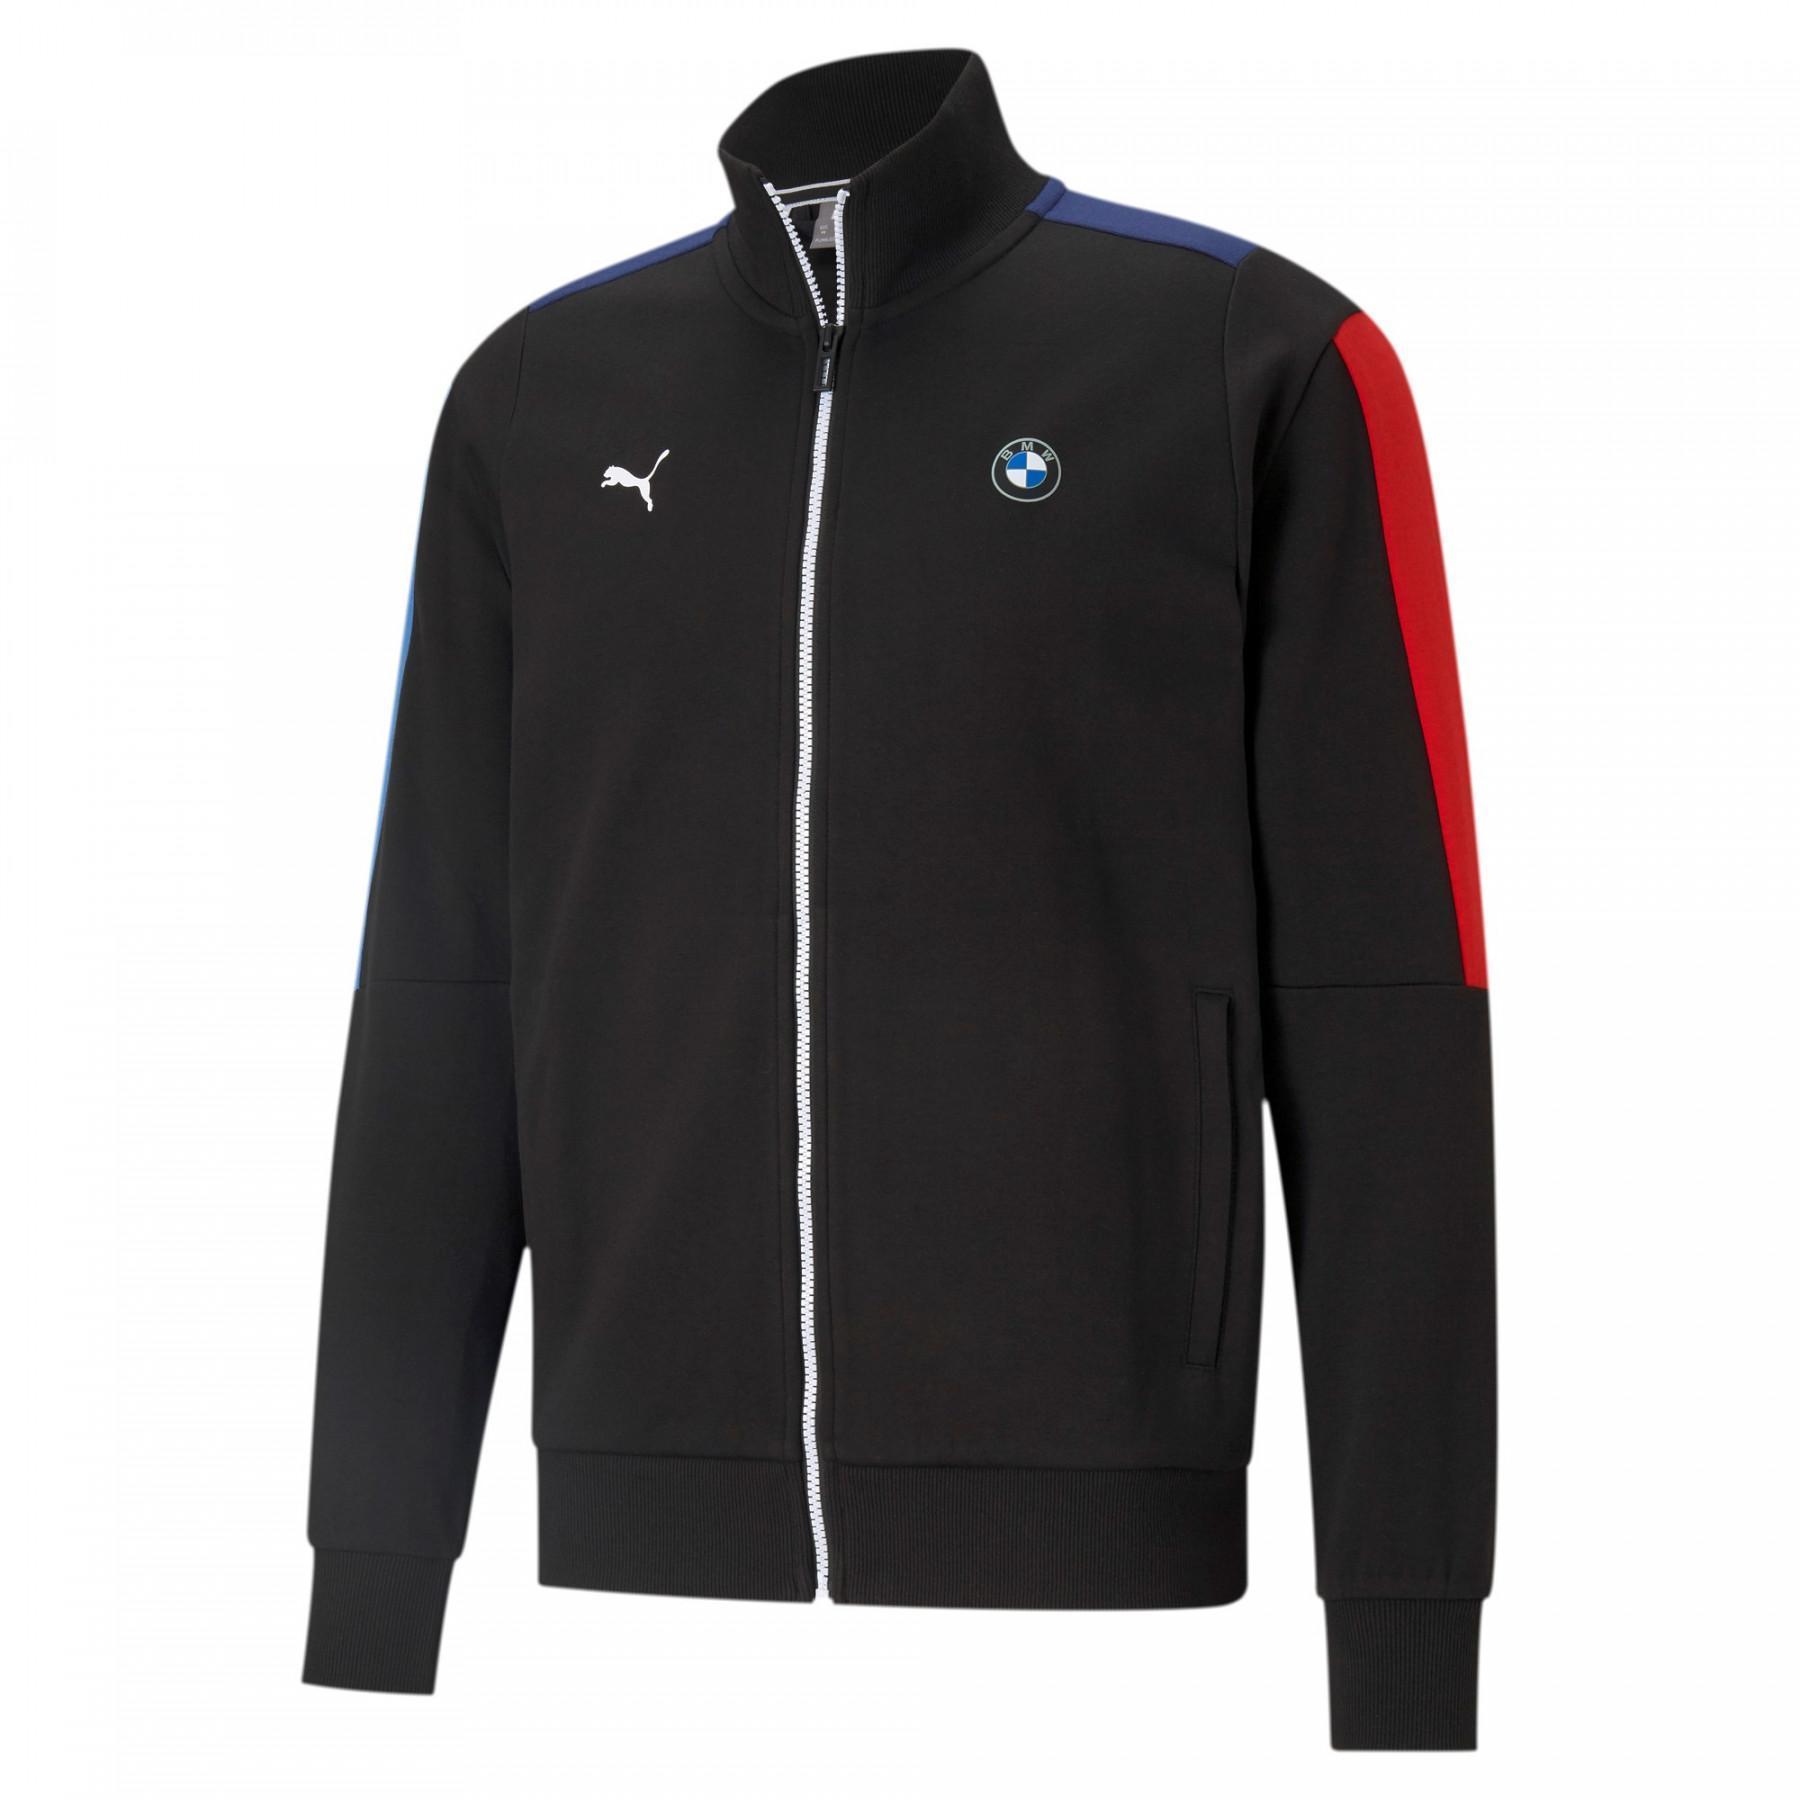 Sweat jacket Puma BMW M Motorsport - Jackets - Men's clothing - Lifestyle